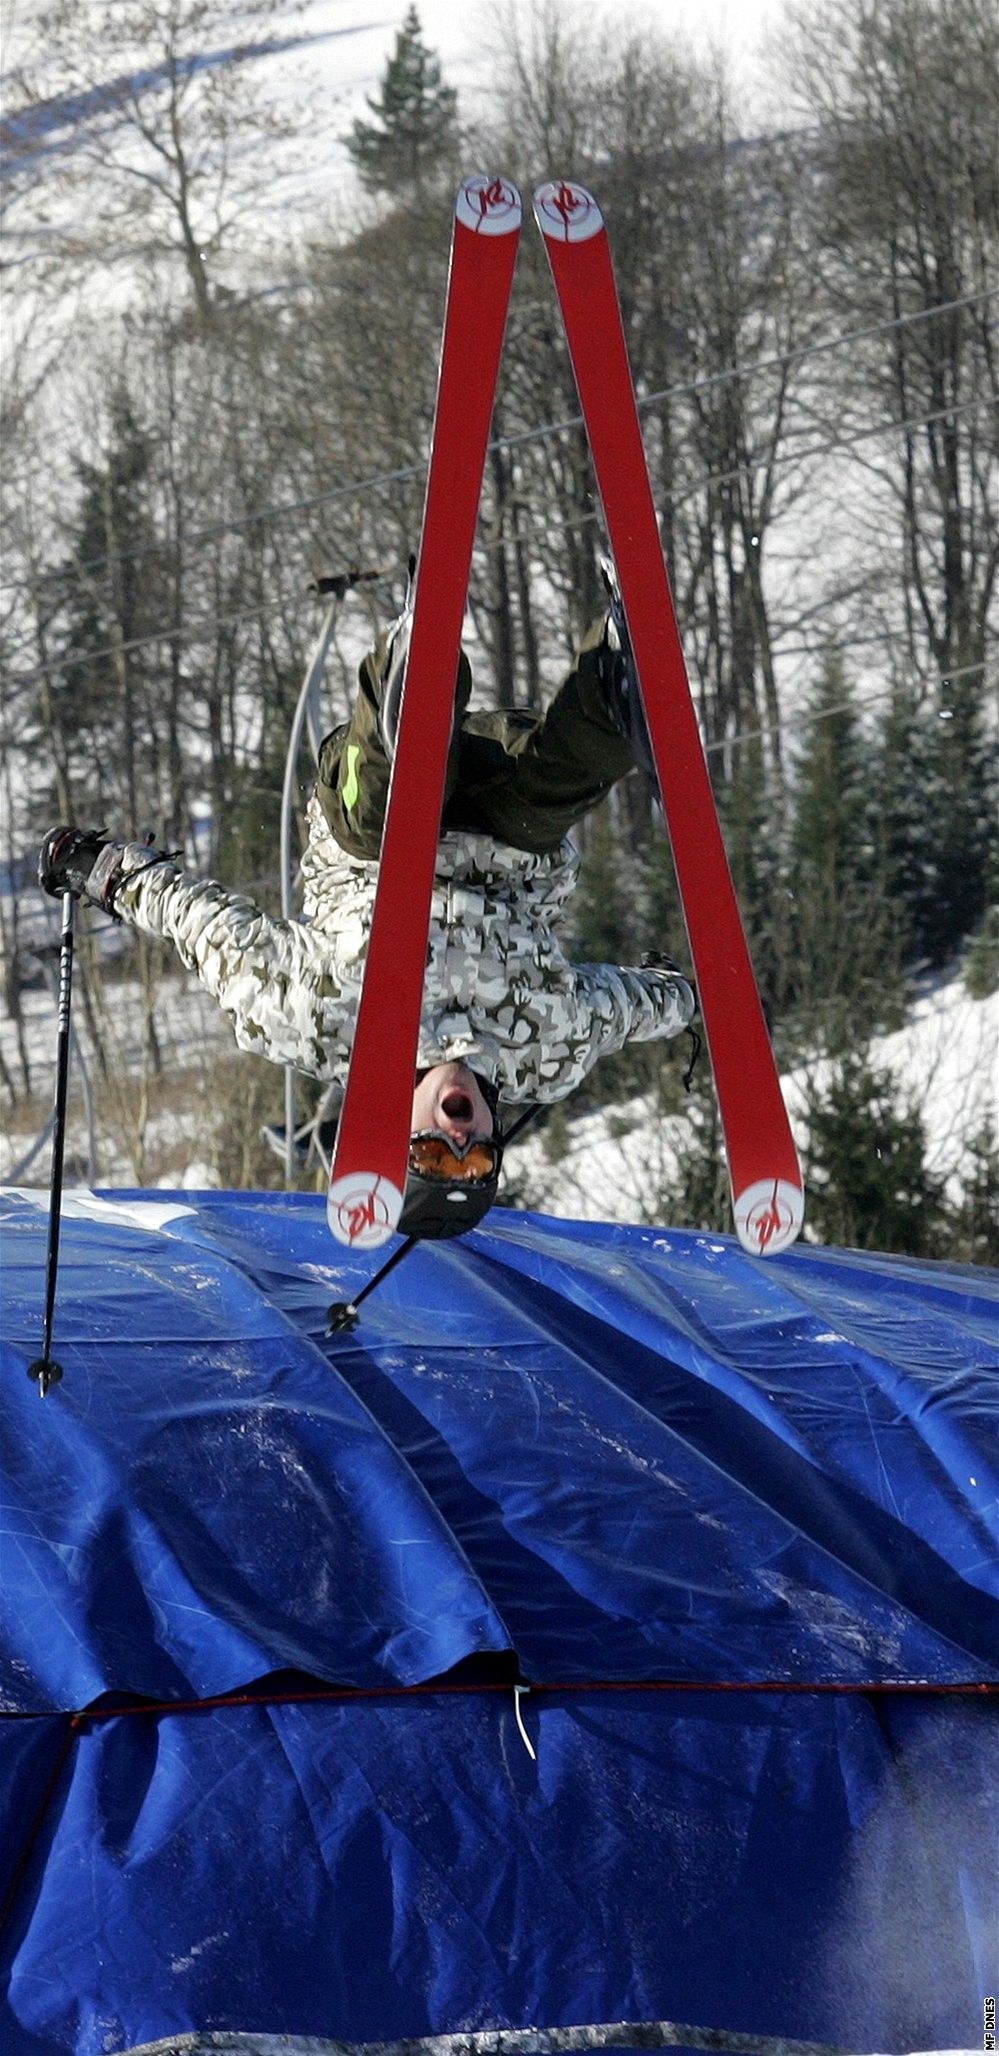 Lyaský areál v Rejdicích má novou atrakci pro milovníky zimních sport - nafukovací doskoit